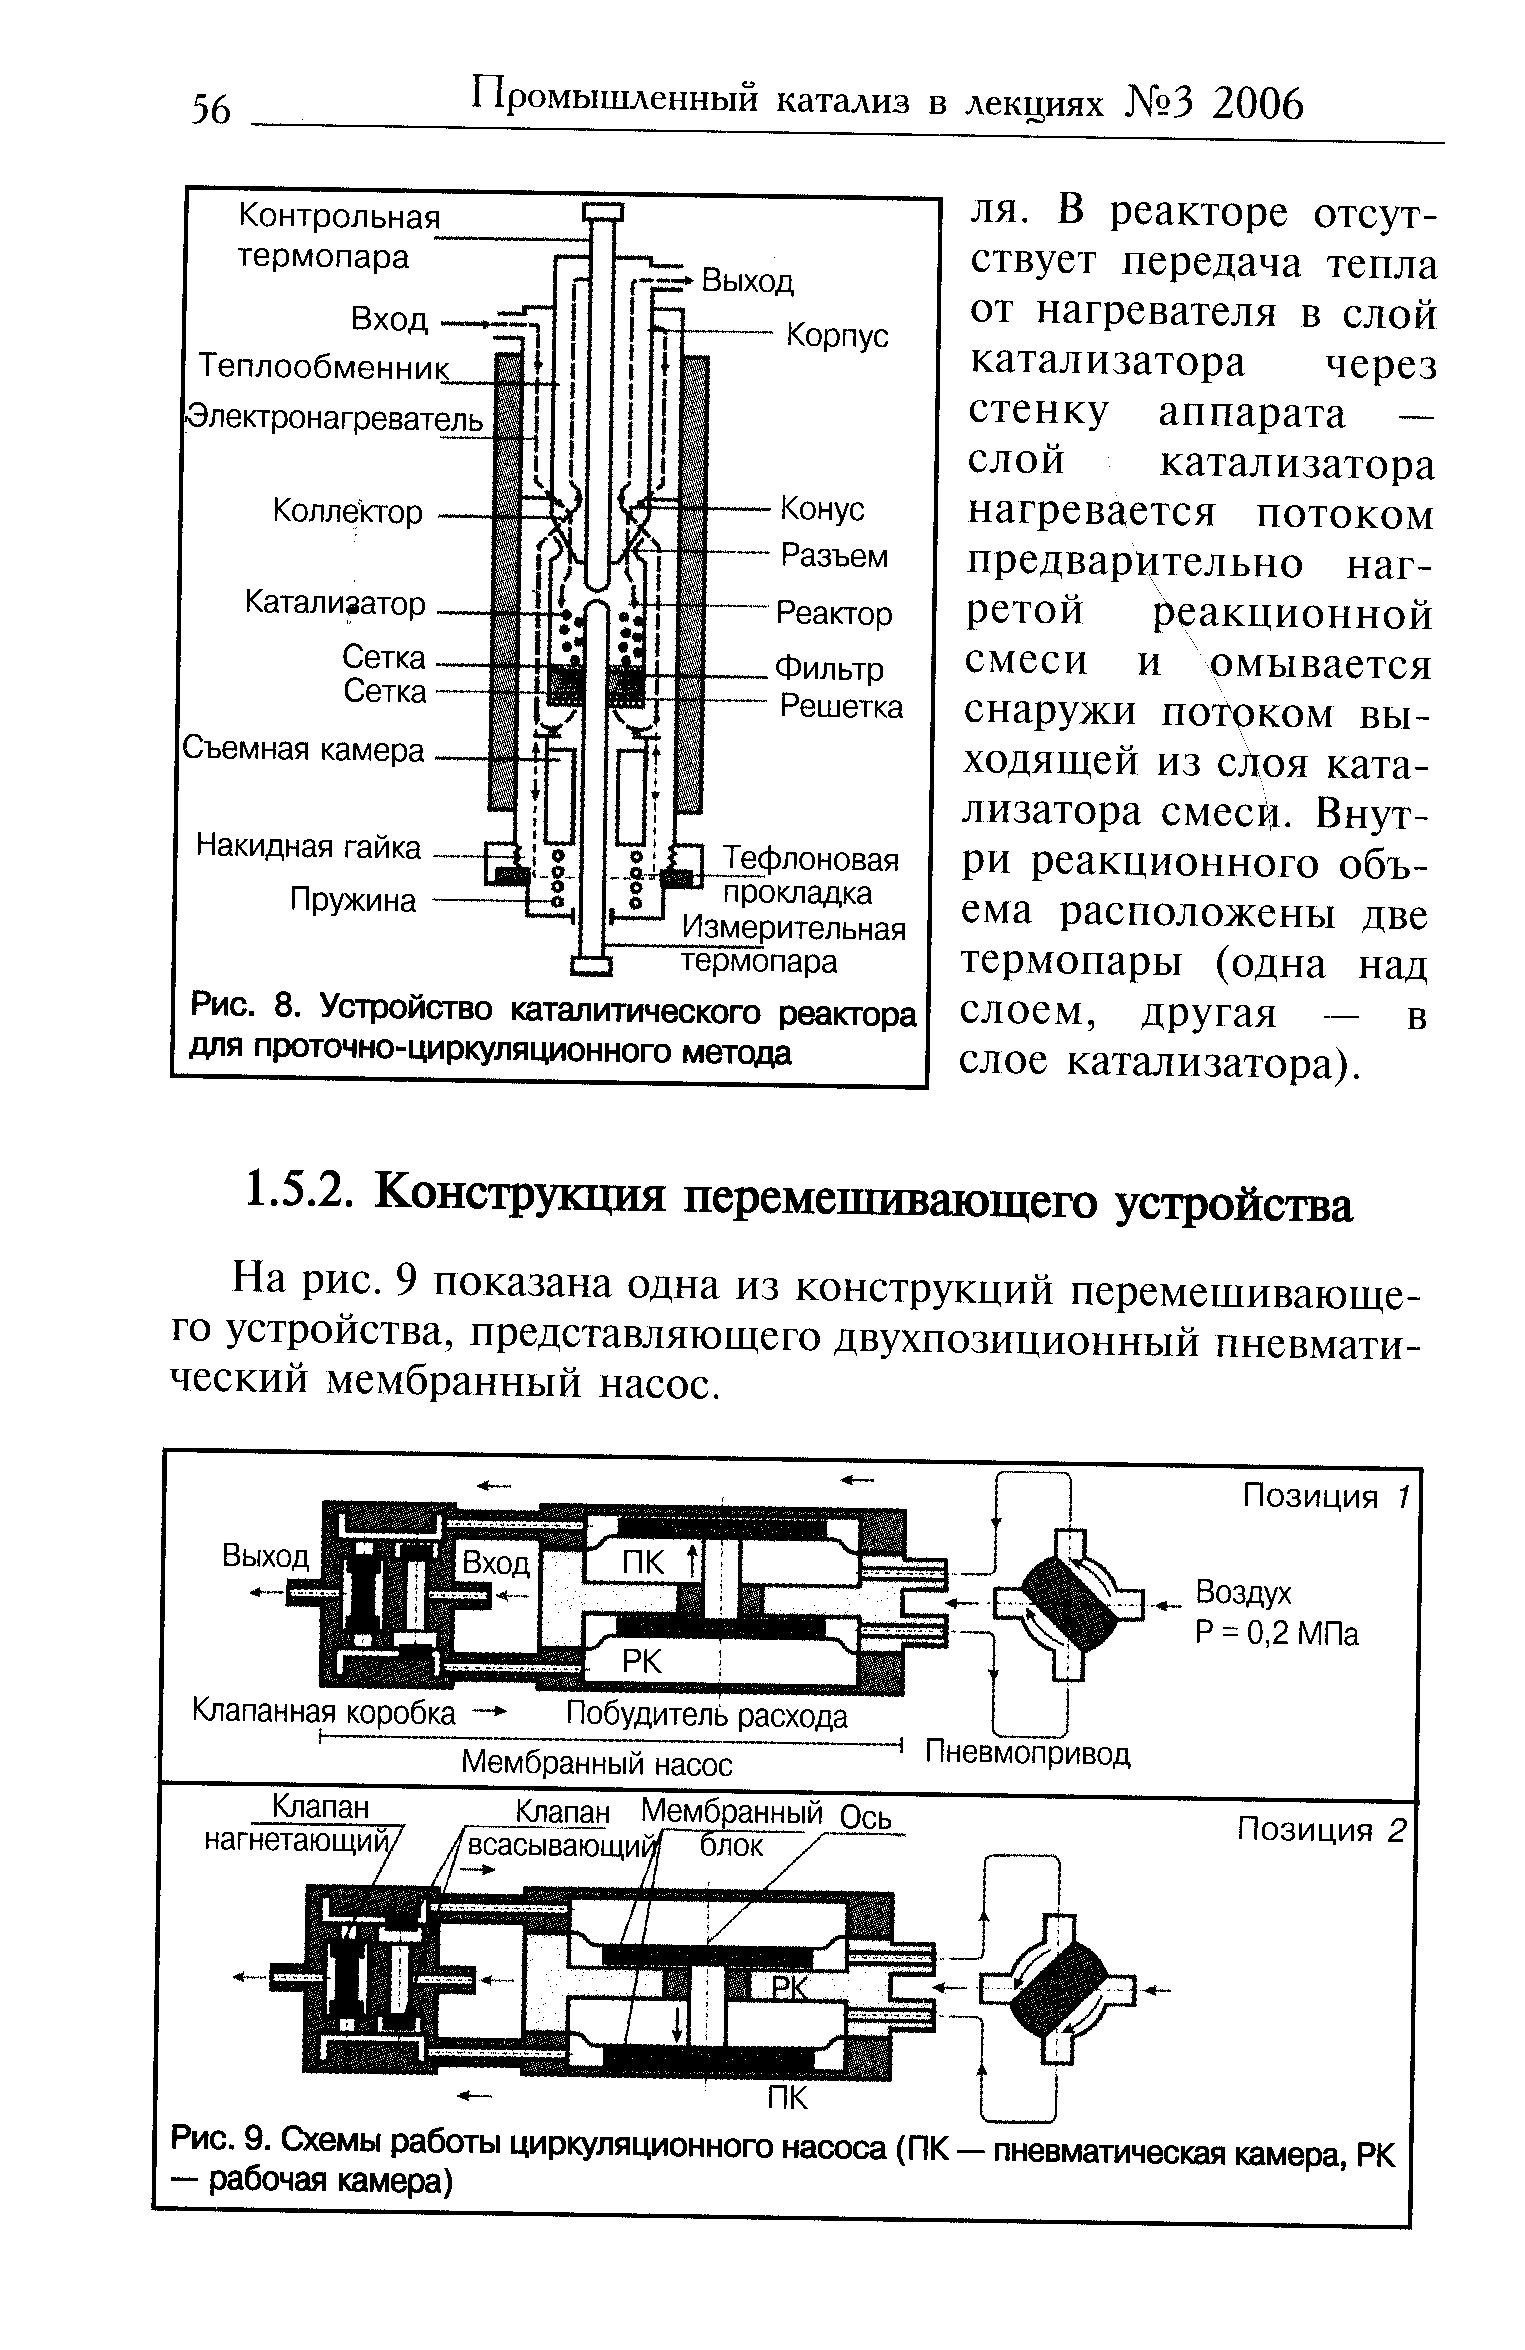 На рис. 9 показана одна из конструкций перемещивающе-го устройства, представляющего двухпозиционный пневматический мембранный насос.